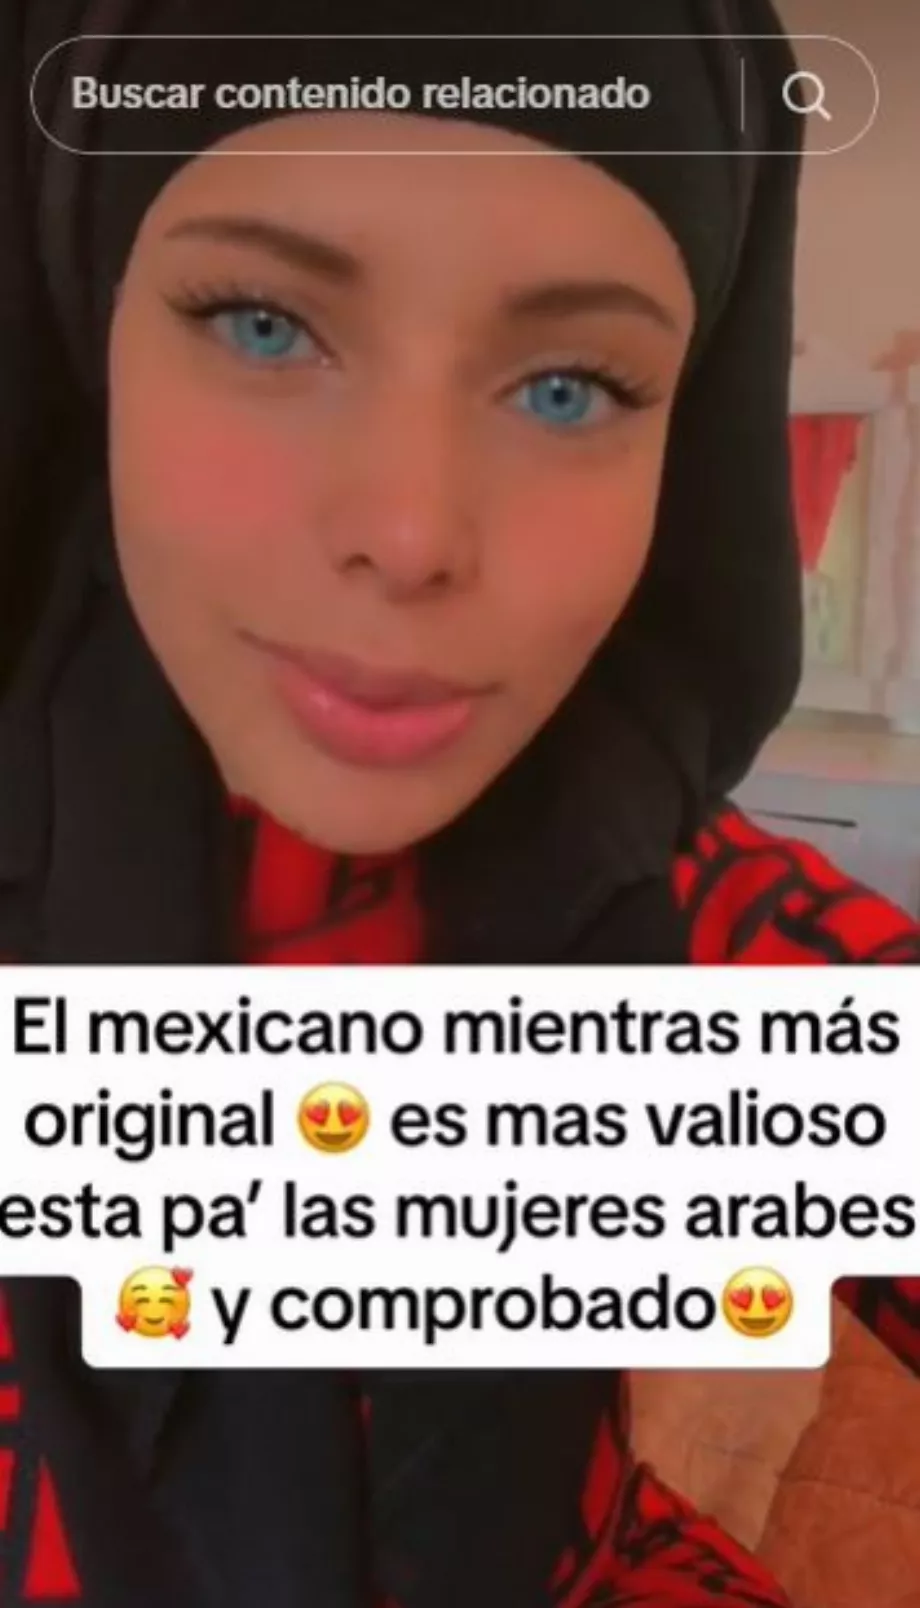 Le créateur de contenu a assuré que les Mexicains rendent folles les femmes arabes. (TikTok @assiyalcs)